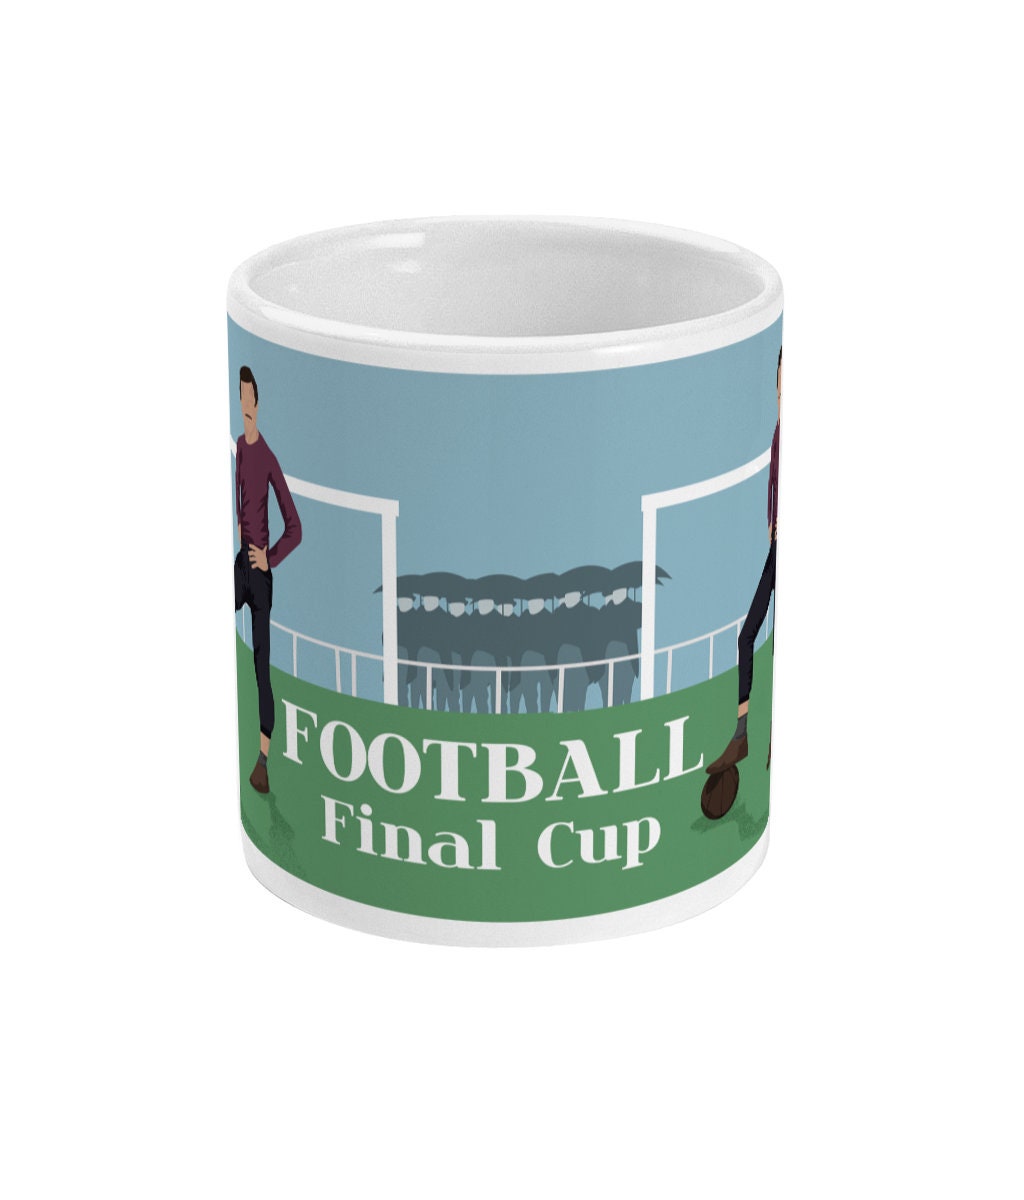 Vintage football cup or mug "The English Game" - Customizable